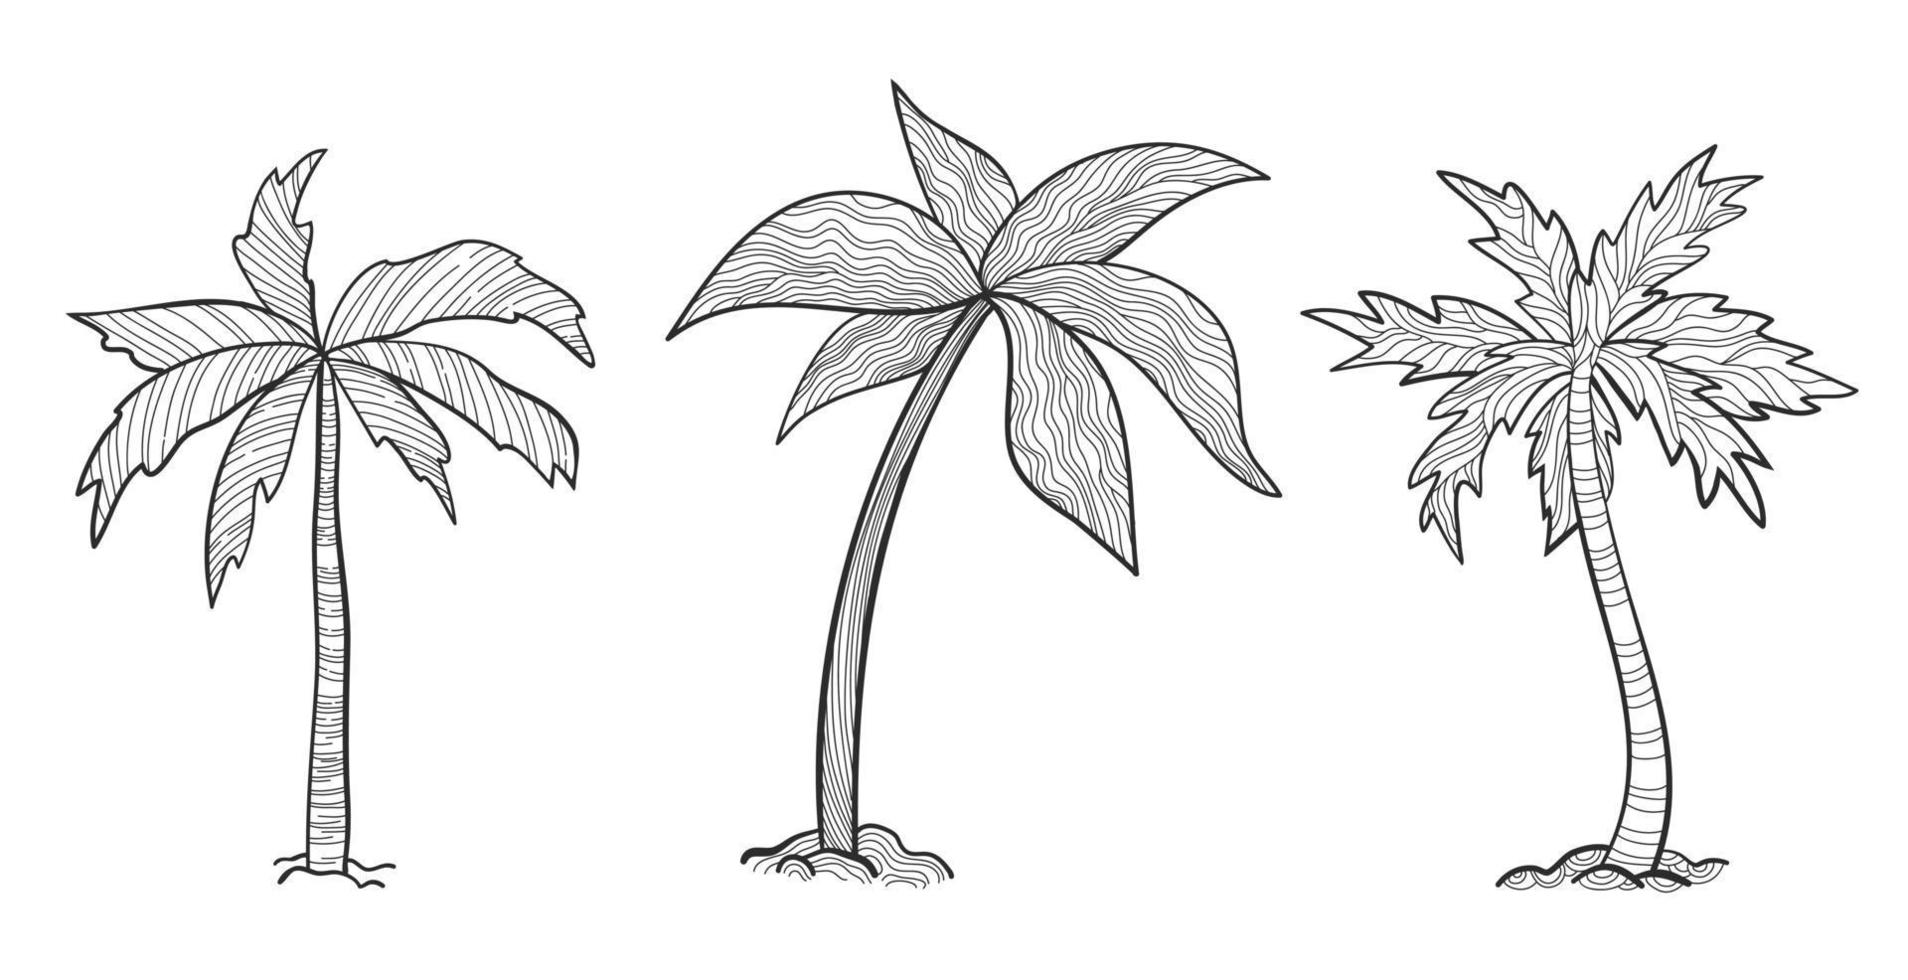 Establecer palmeras tropicales con hojas, plantas maduras y jóvenes, siluetas negras aisladas sobre fondo blanco. estilo de dibujo para su diseño. vector